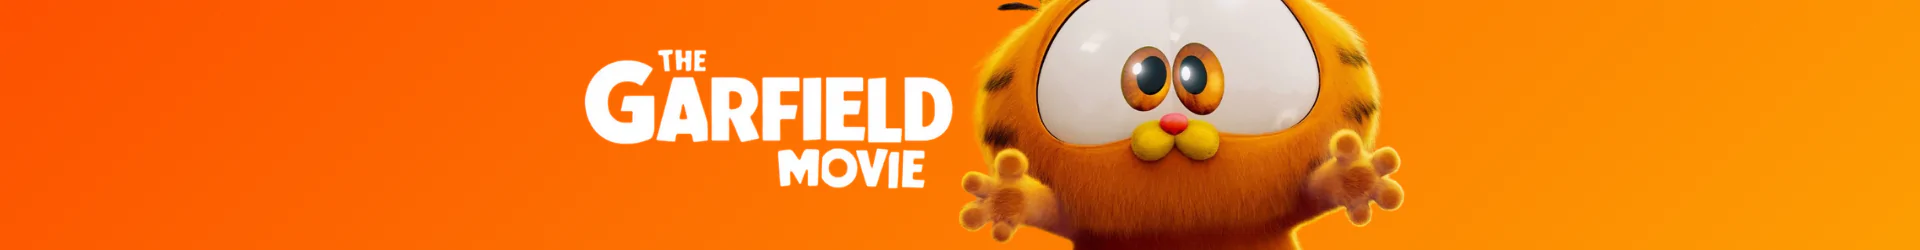 Garfield figures banner